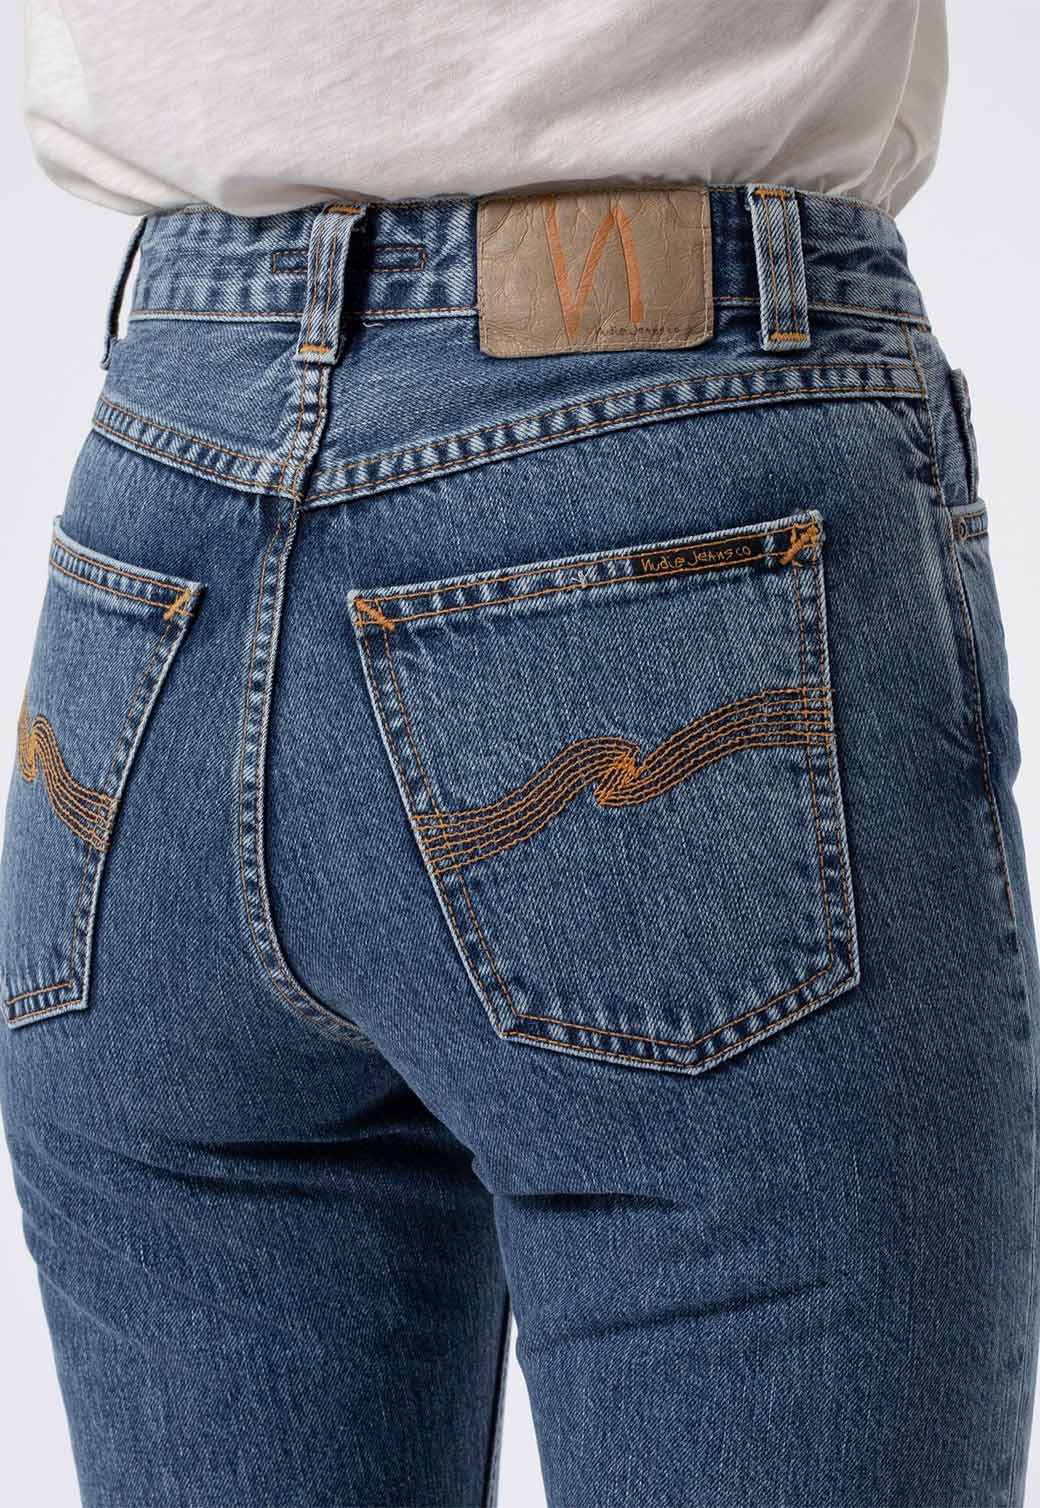 Dark Slate Gray ג'ינס ארוך לנשים Breezy Britt - Friendly Blue NUDIE